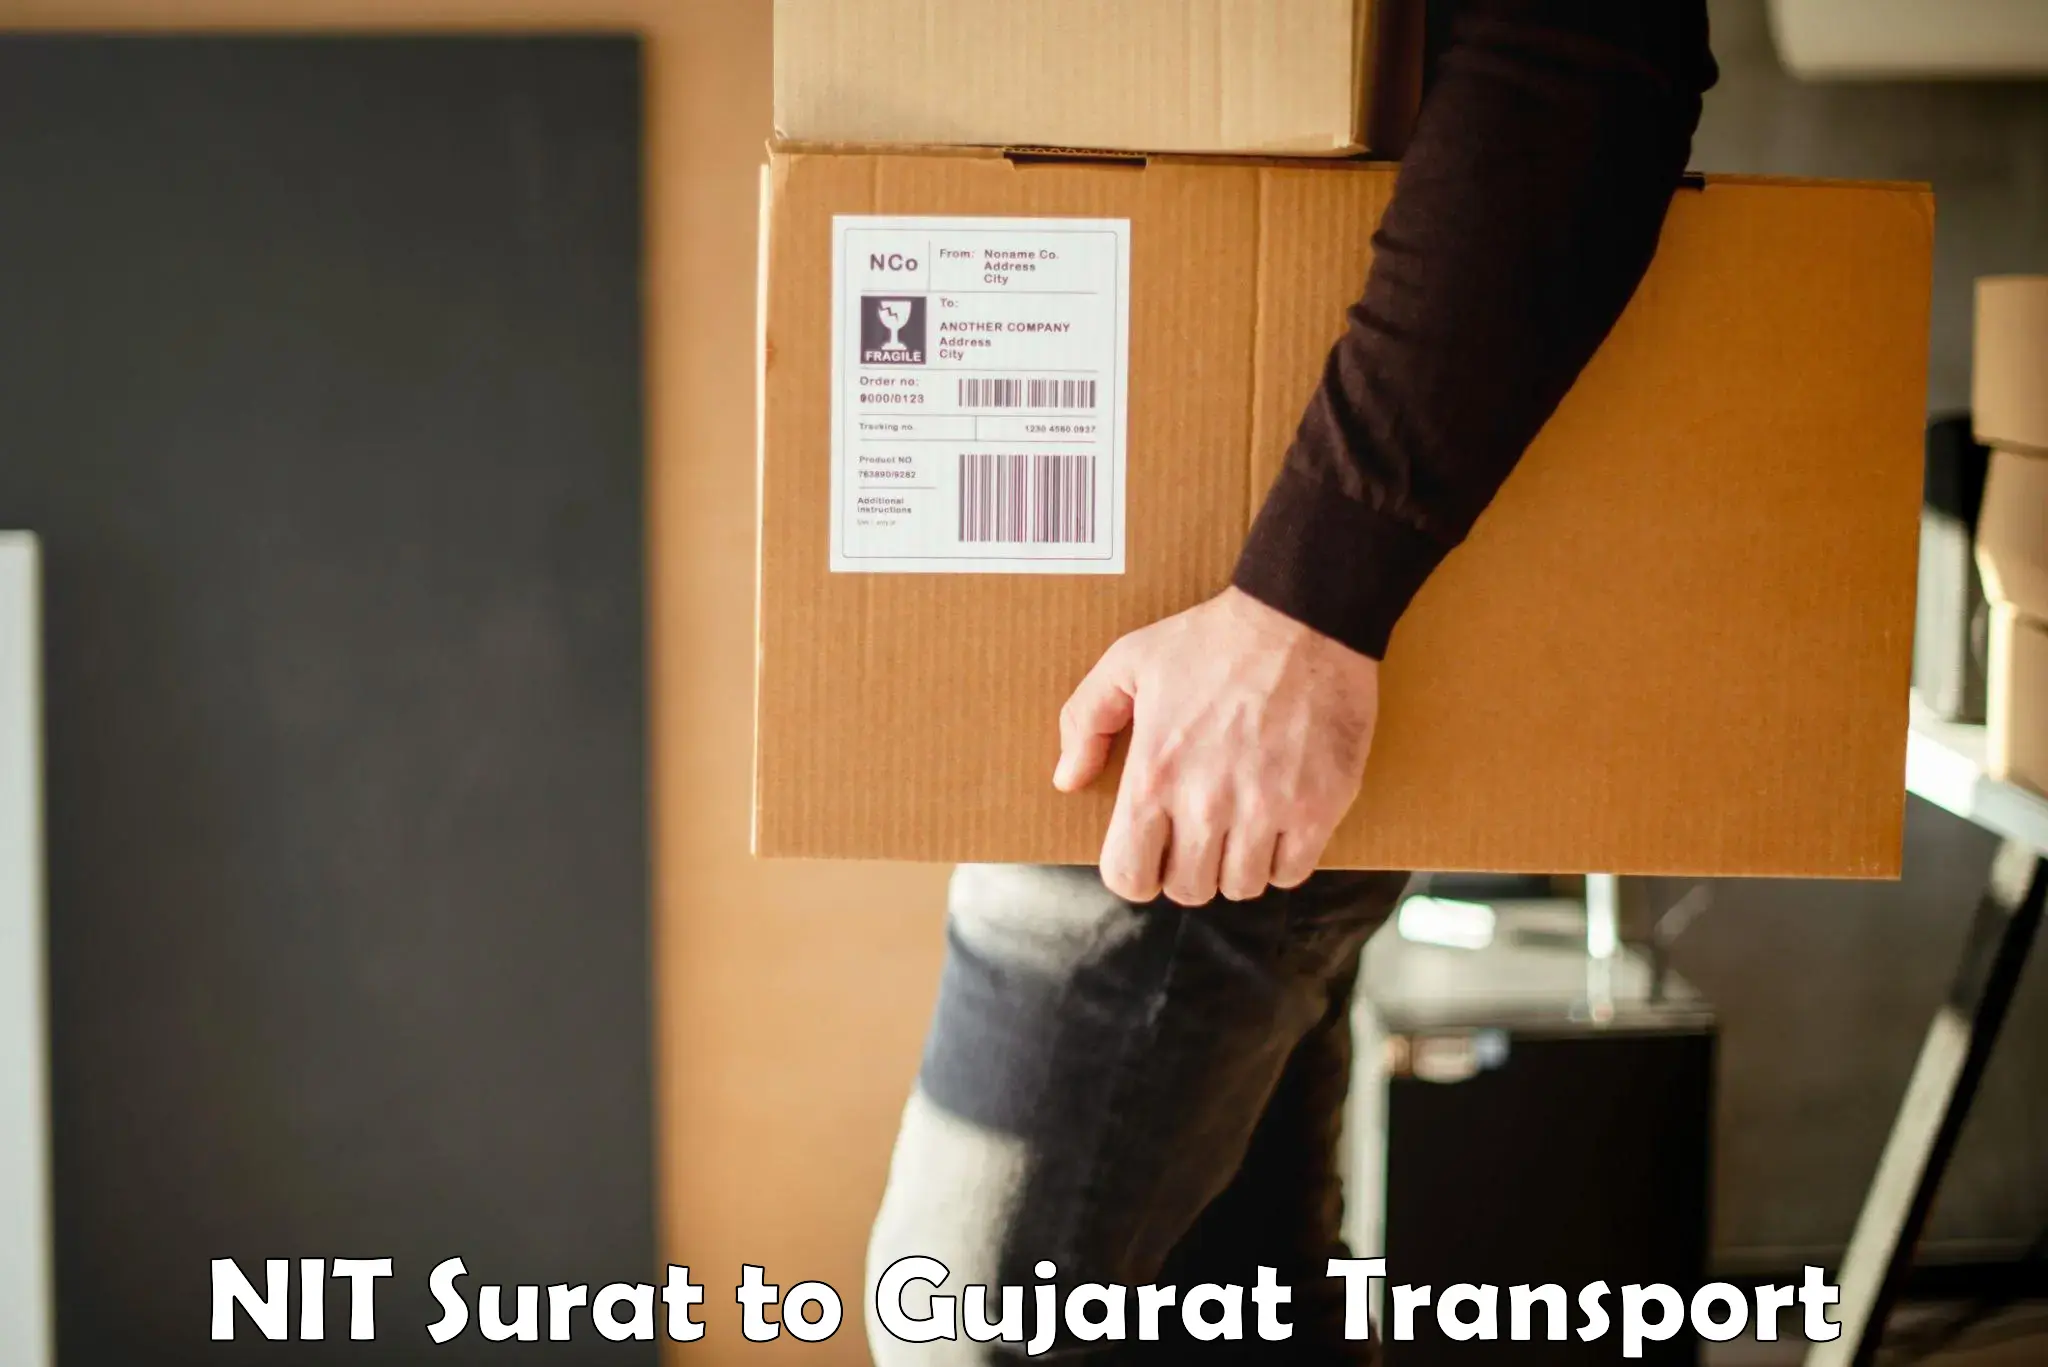 Pick up transport service NIT Surat to Gandhinagar